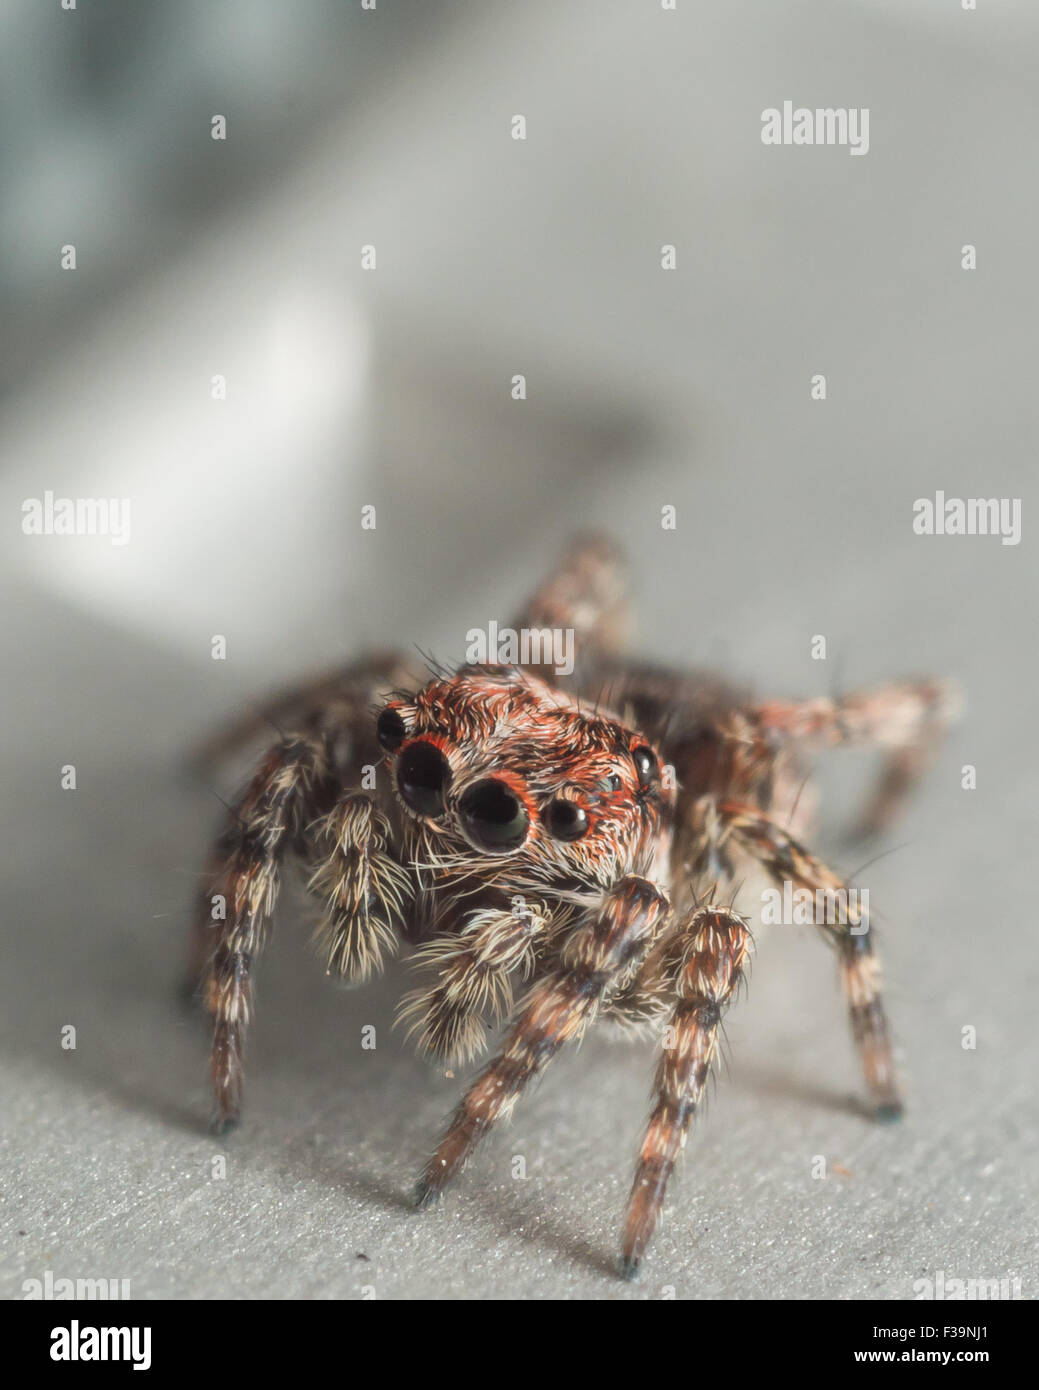 Araignée sauteuse adolescent mignons avec de grands yeux Banque D'Images